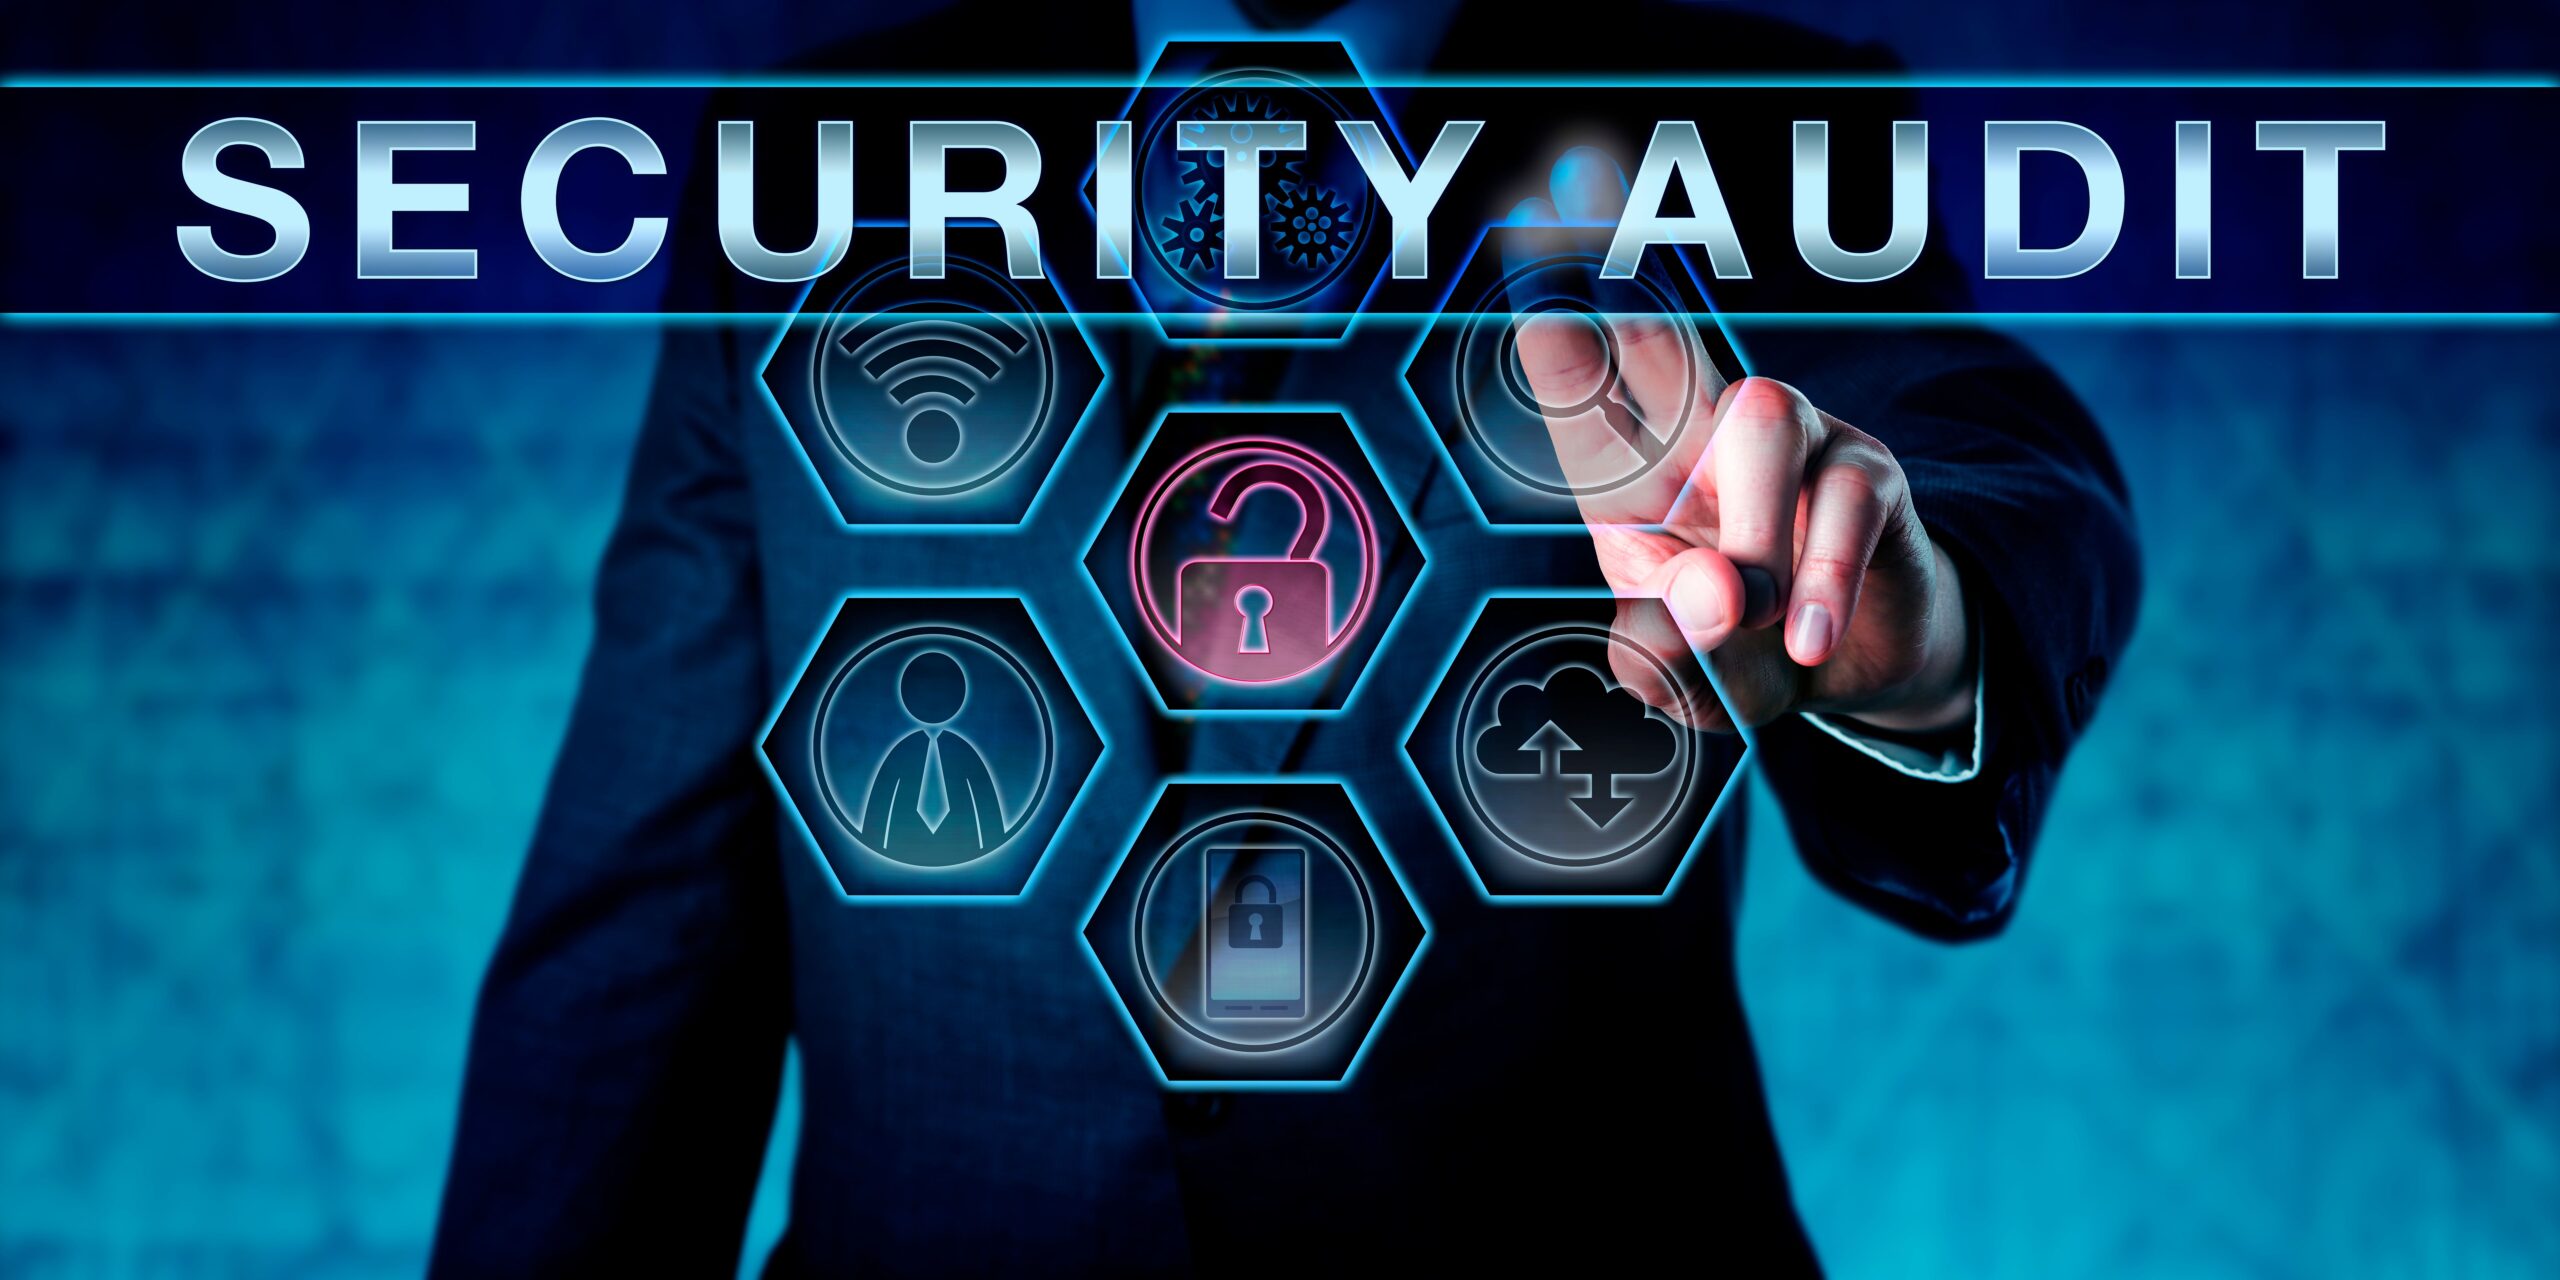 Security Audit, Mann, Man, Schloss, Daten, WLAN, Mobile, Search